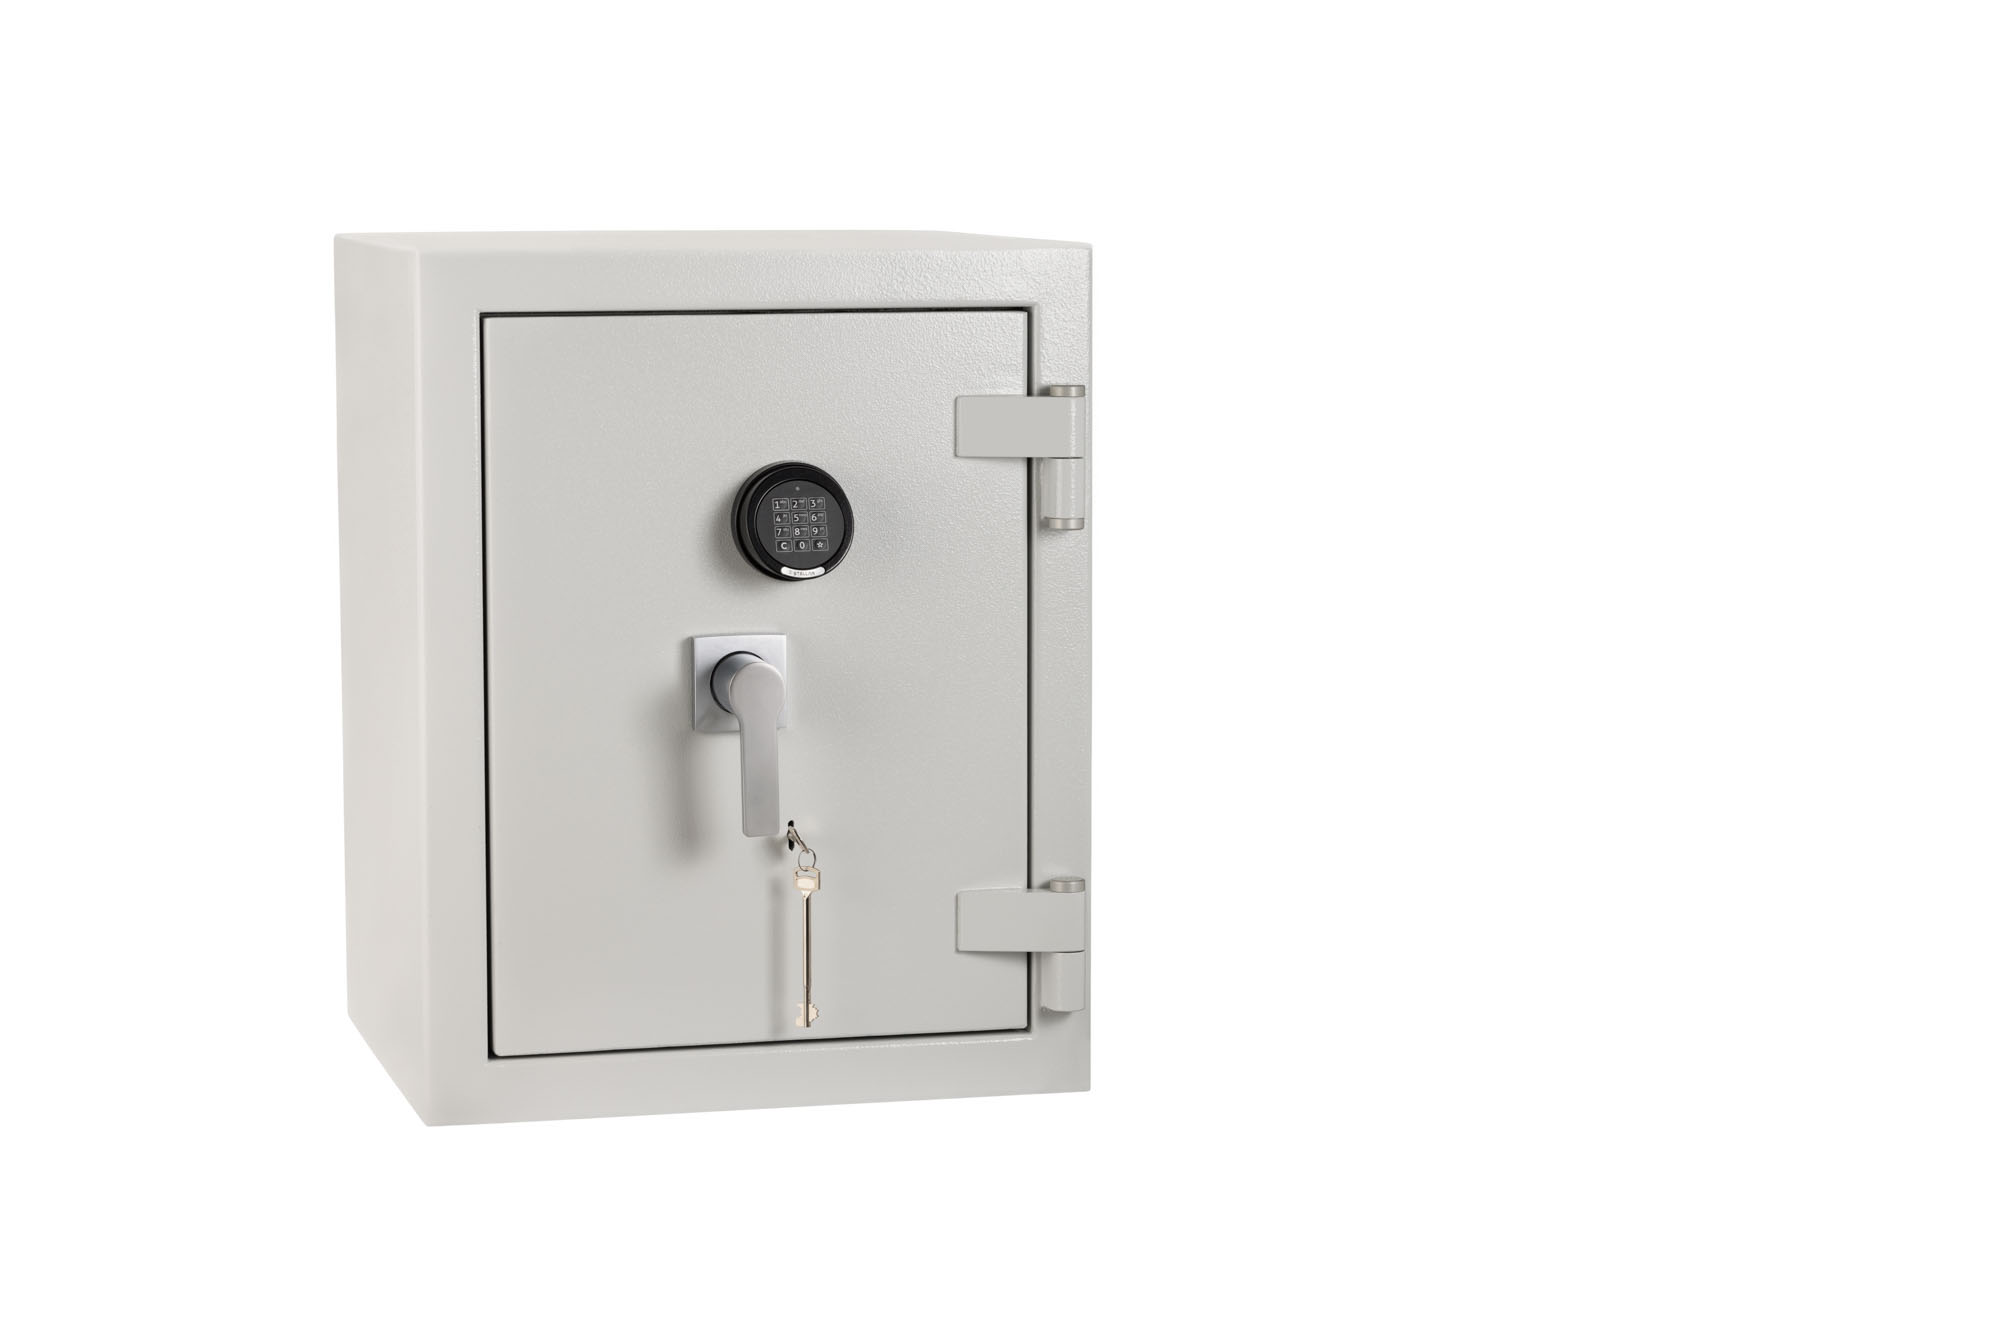 De Raat DRS Prisma Grade 4 size 2ke retailer safe or commerce safe with key and electronic locks.